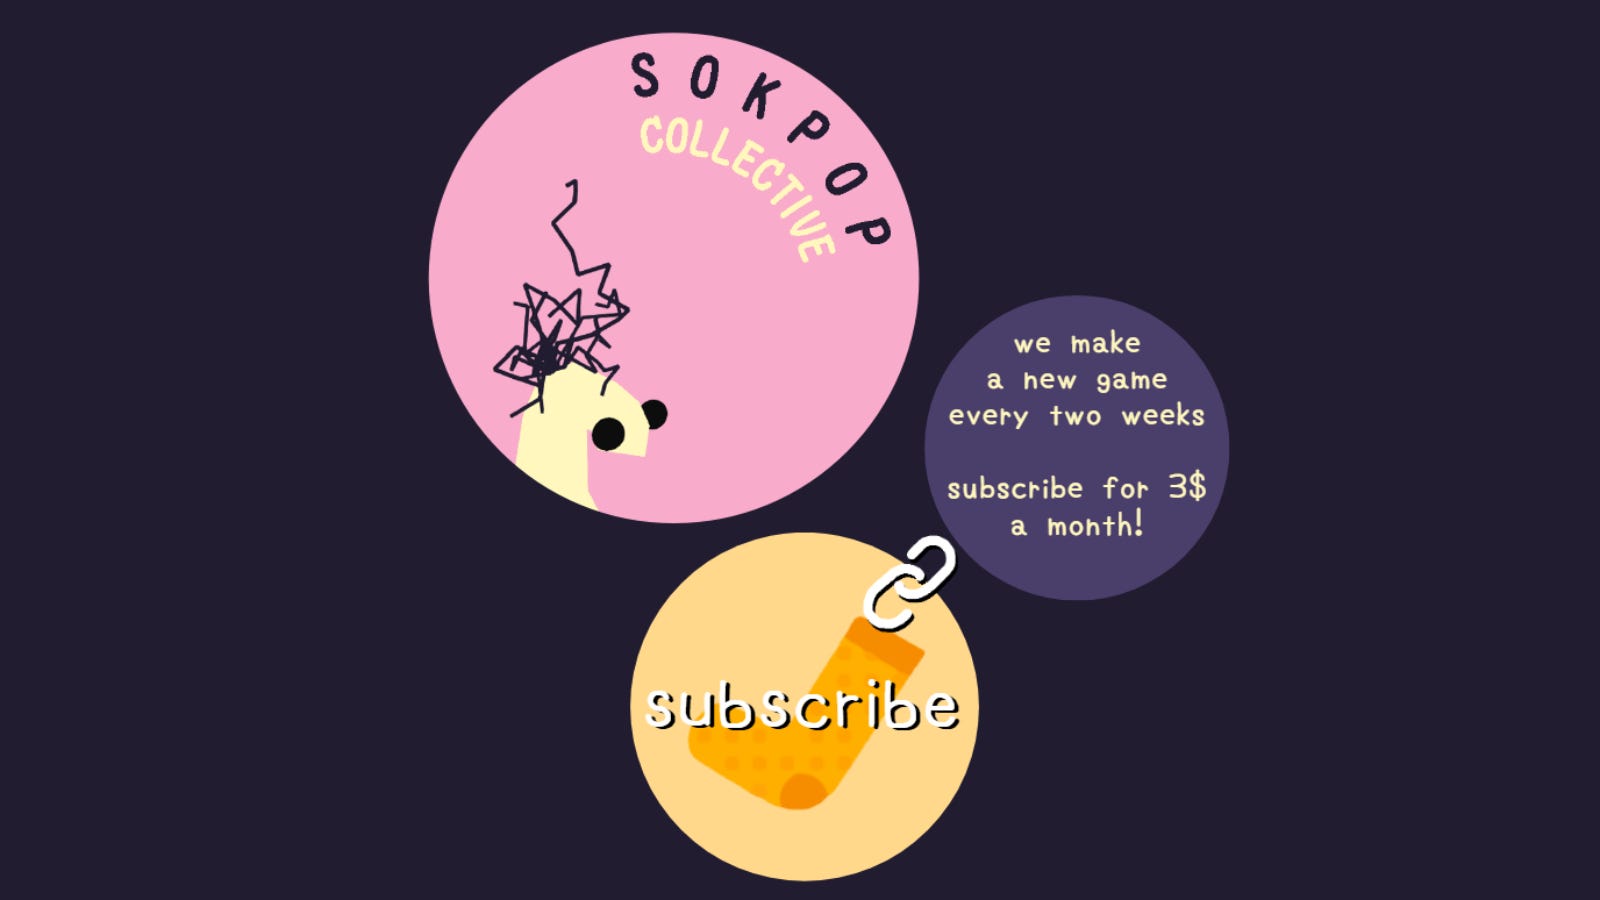 Trang chủ trang web Sokpop Collective